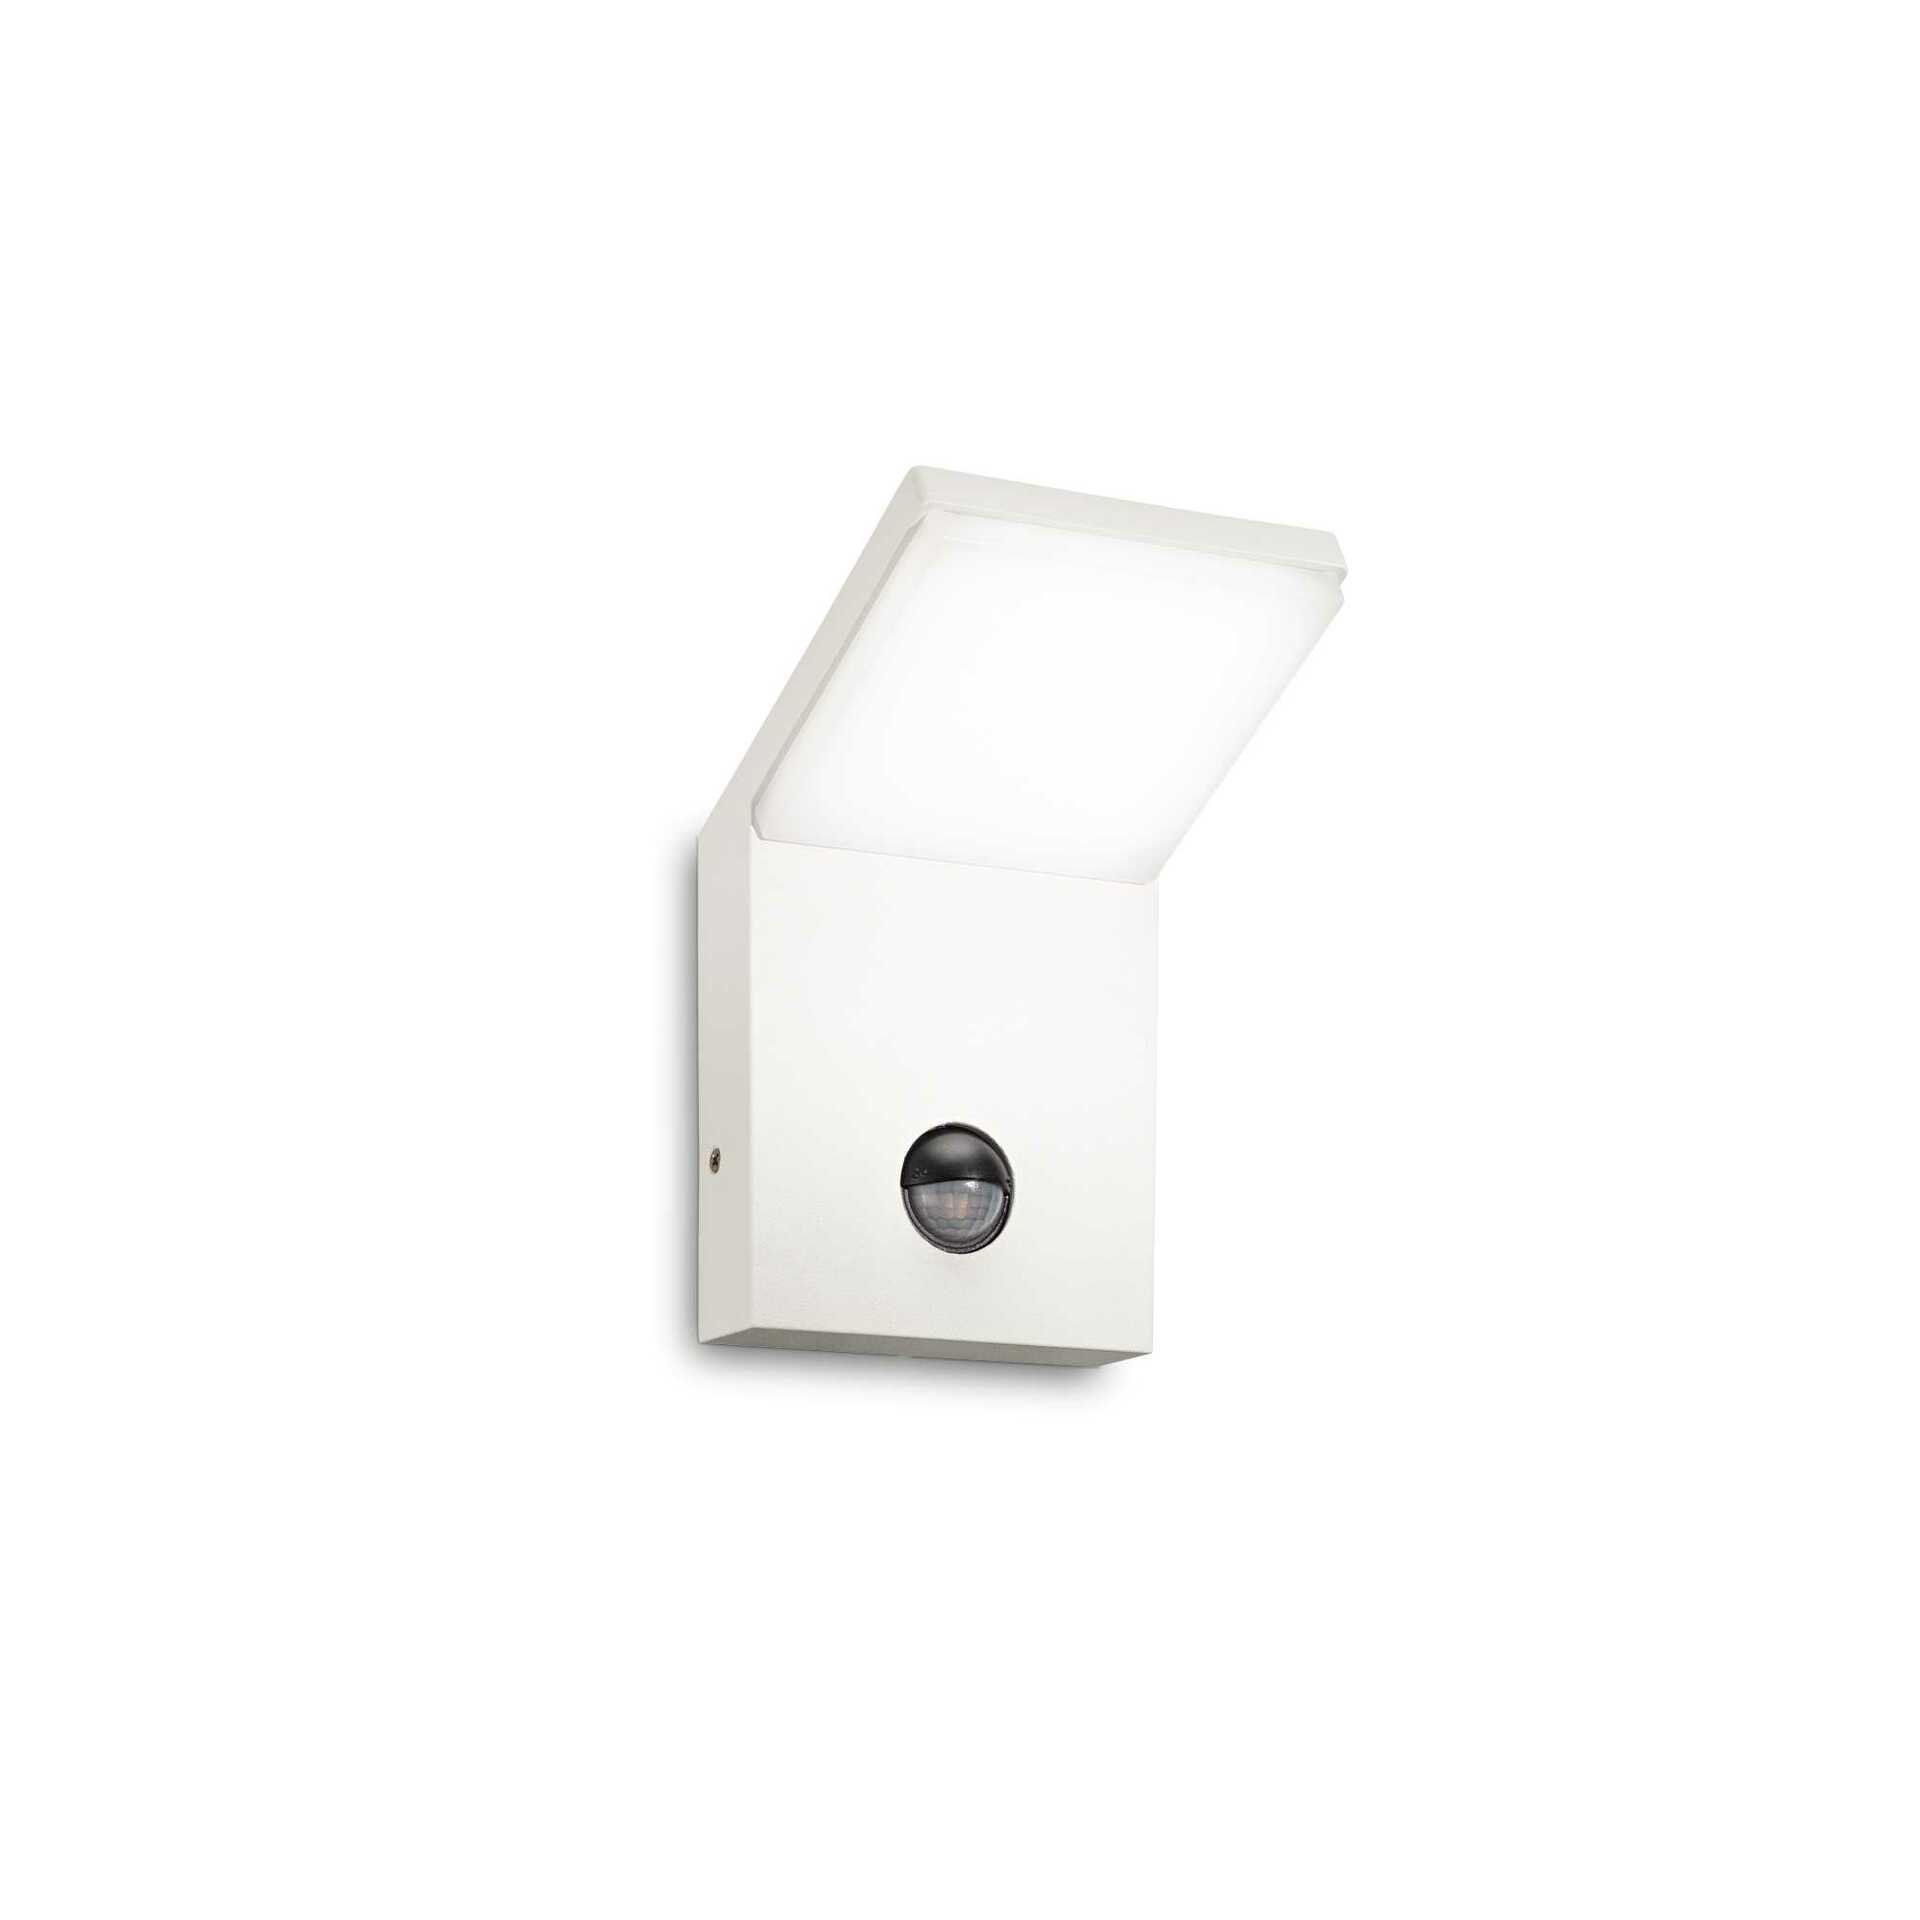 LED Venkovní nástěnné svítidlo Ideal Lux Style AP1 Bianco 209852 9,5W 680lm IP54 bílé s čidlem